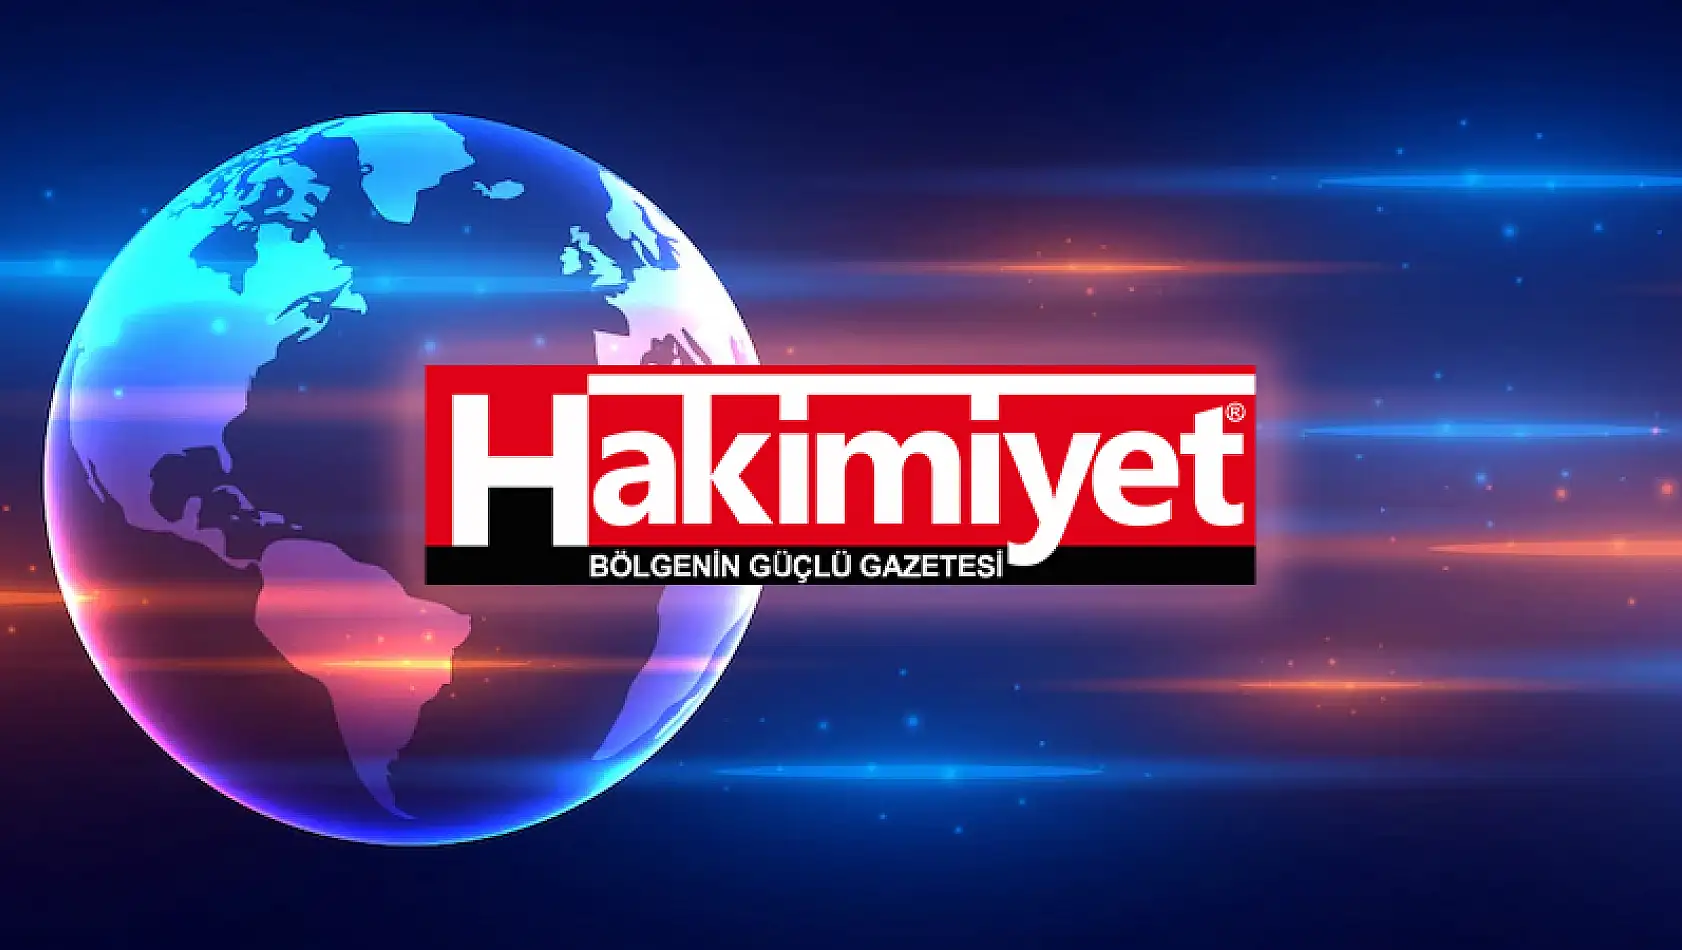 Konya'daki 'Ankesörlü Telefon' soruşturmasında 3 kişi tutuklandı